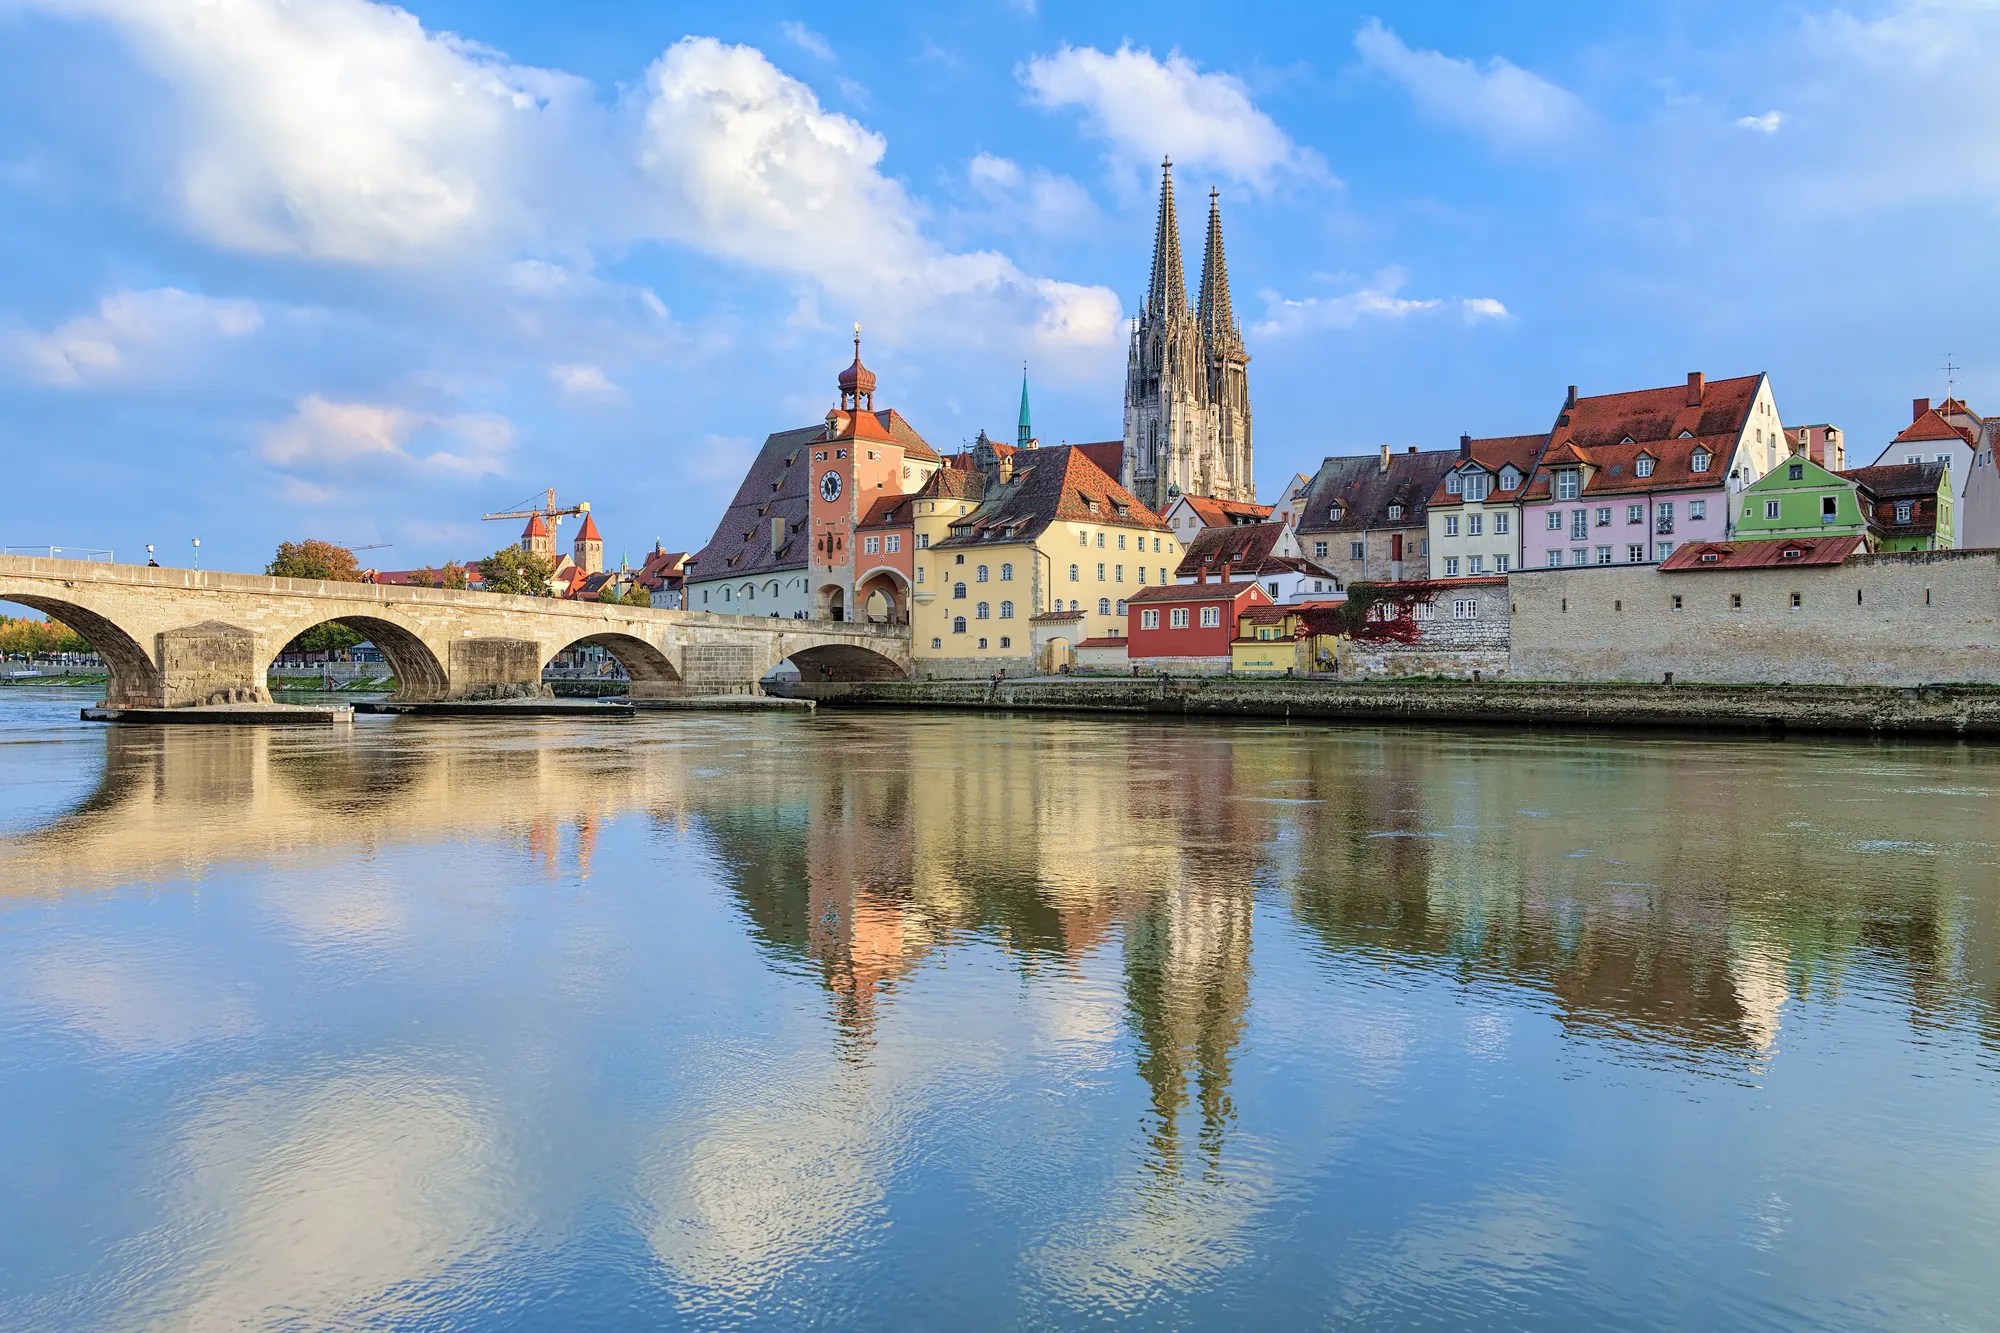 Dom St Peter an der Donau vor der berühmten Steinernen Brücke bei Besuch mit Hotel in Regensburg